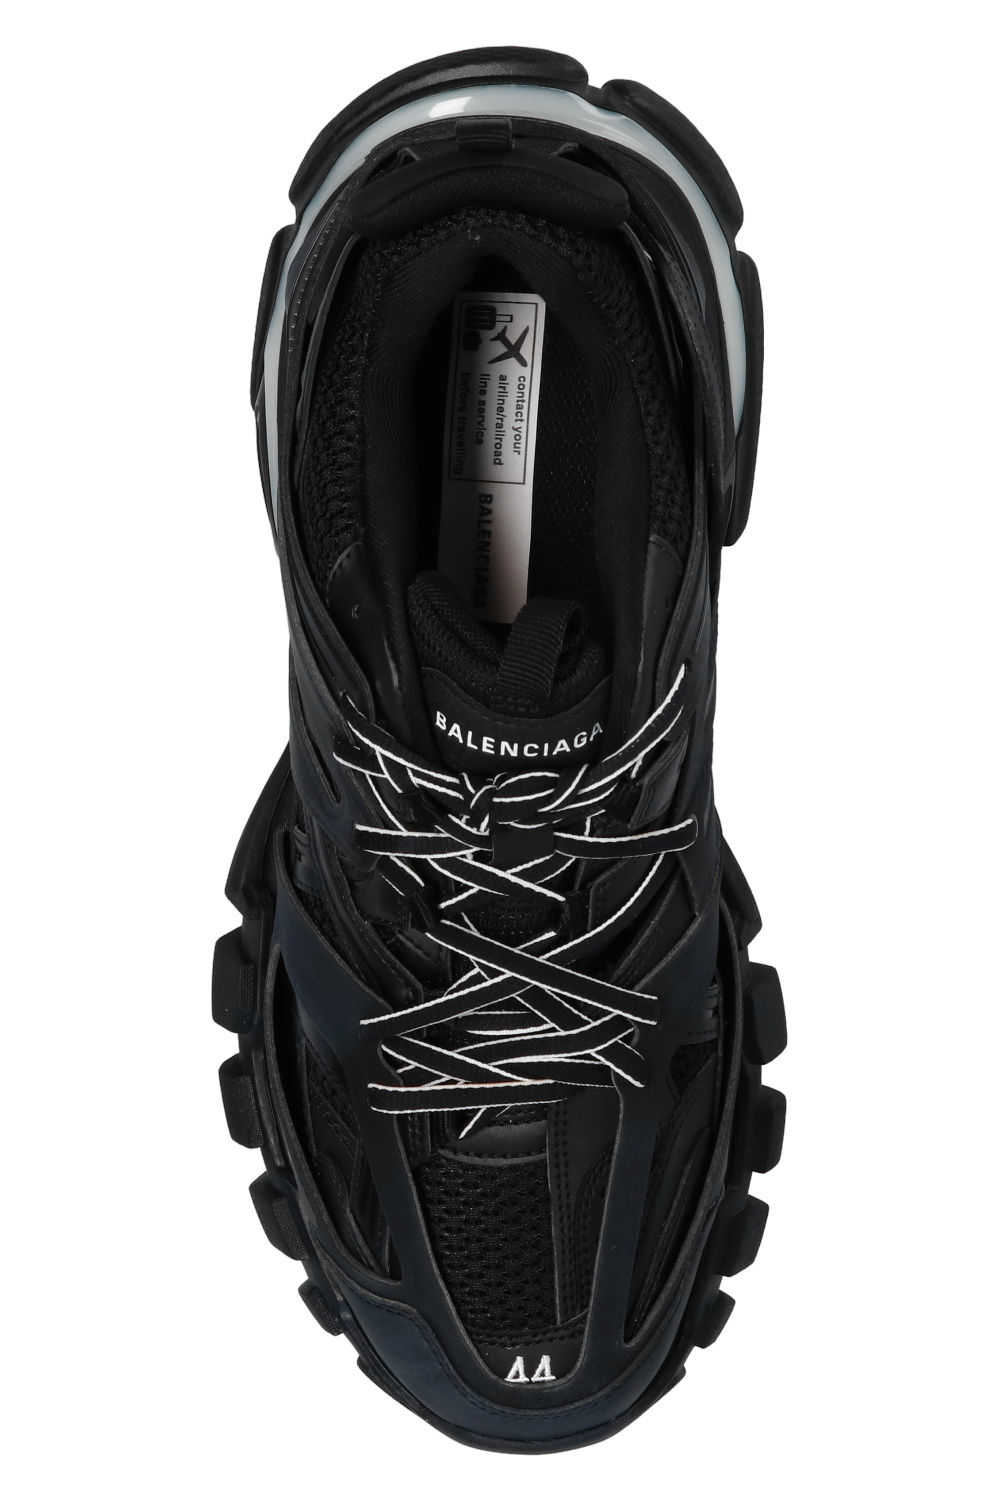 IetpShops Germany - zapatillas de Adidas pista voladoras talla 44.5 - Black LED' sneakers Balenciaga